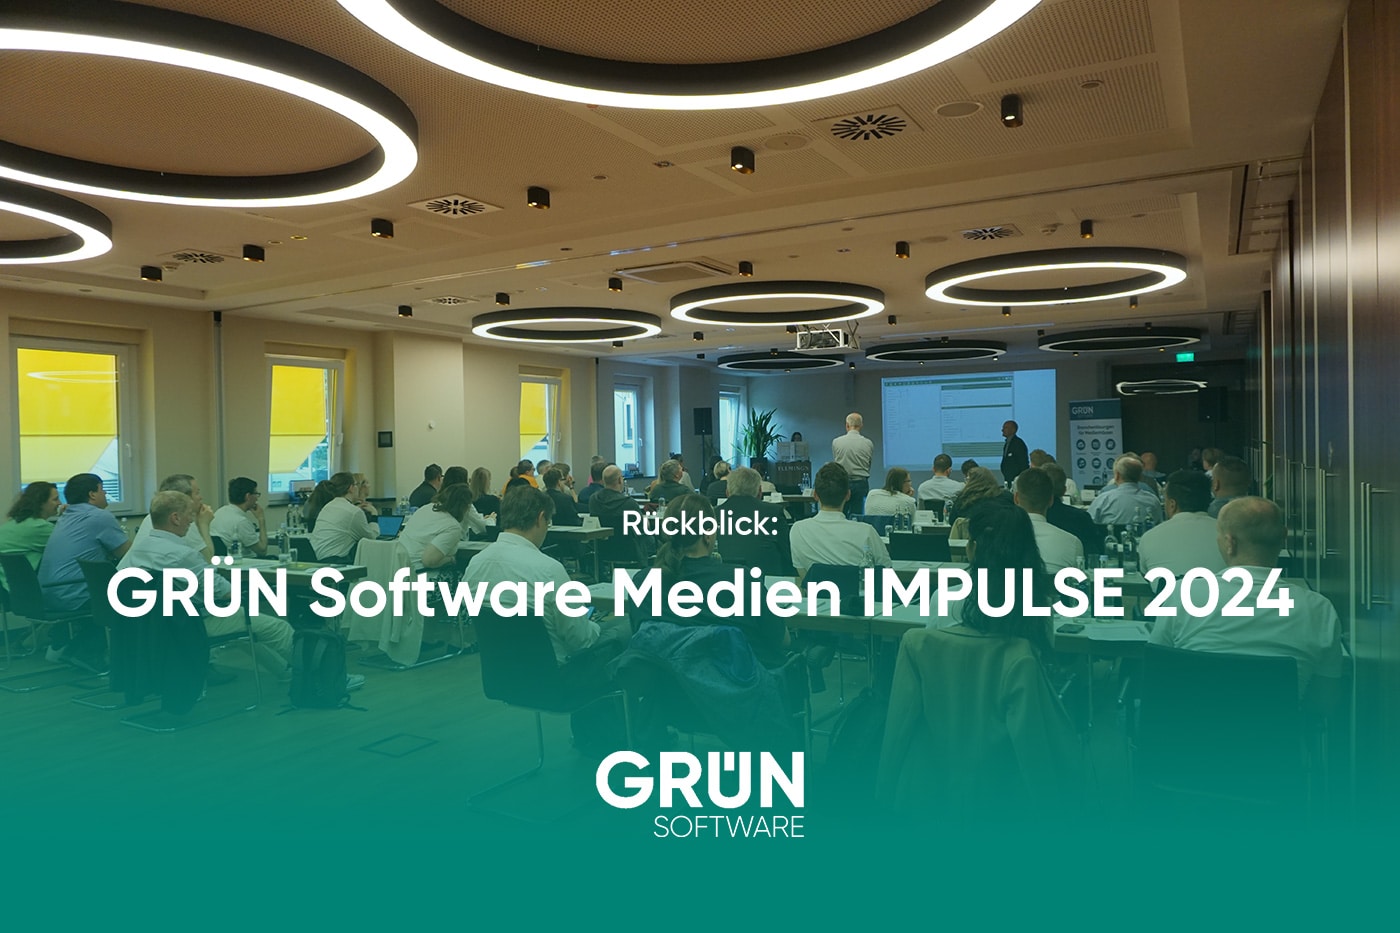 GRÜN Software Medien Impulse 2024 - Rückblick